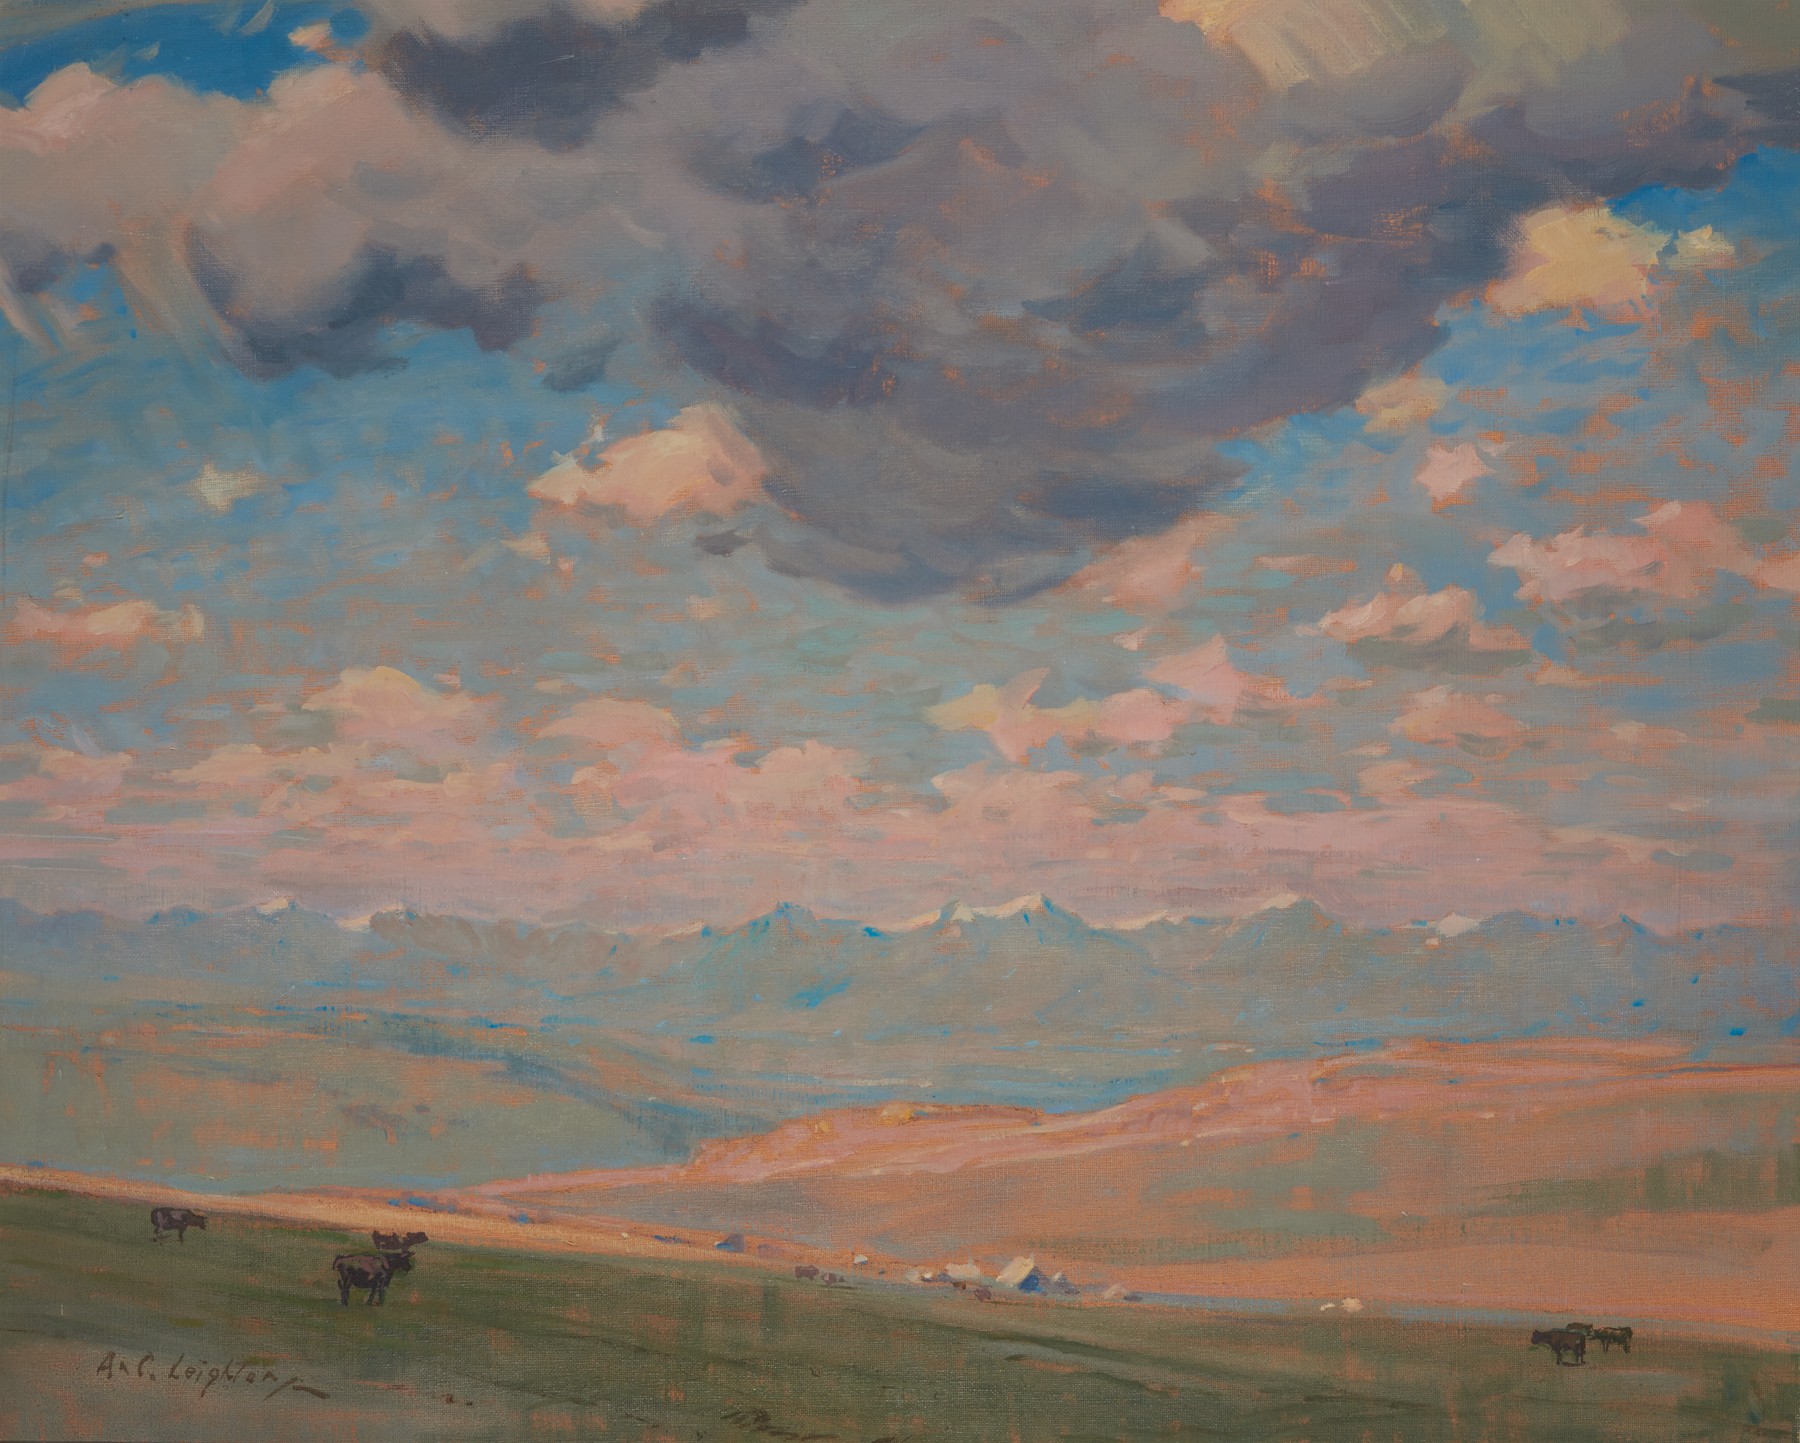 Peinture à l’huile d’un paysage des Prairies avec des montagnes et un ciel spectaculaire, couvert de nuages mais bleu au loin; petits animaux et bâtiments au milieu du terrain.